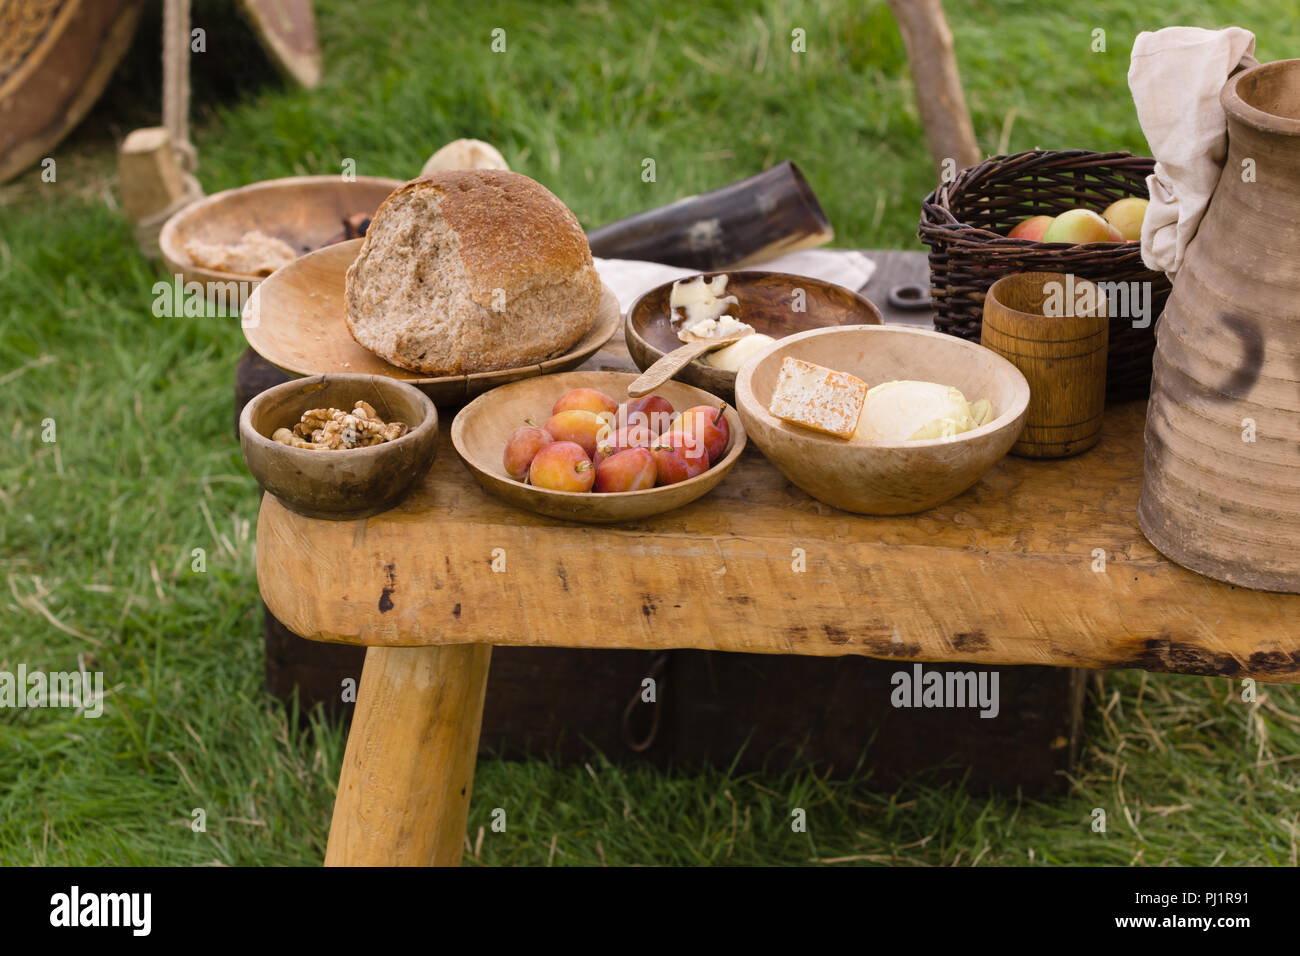 Selezione tipica medievale di cibo tra cui pane, burro, formaggio, frutta e noci servita in ciotole di legno o trenchers Foto Stock